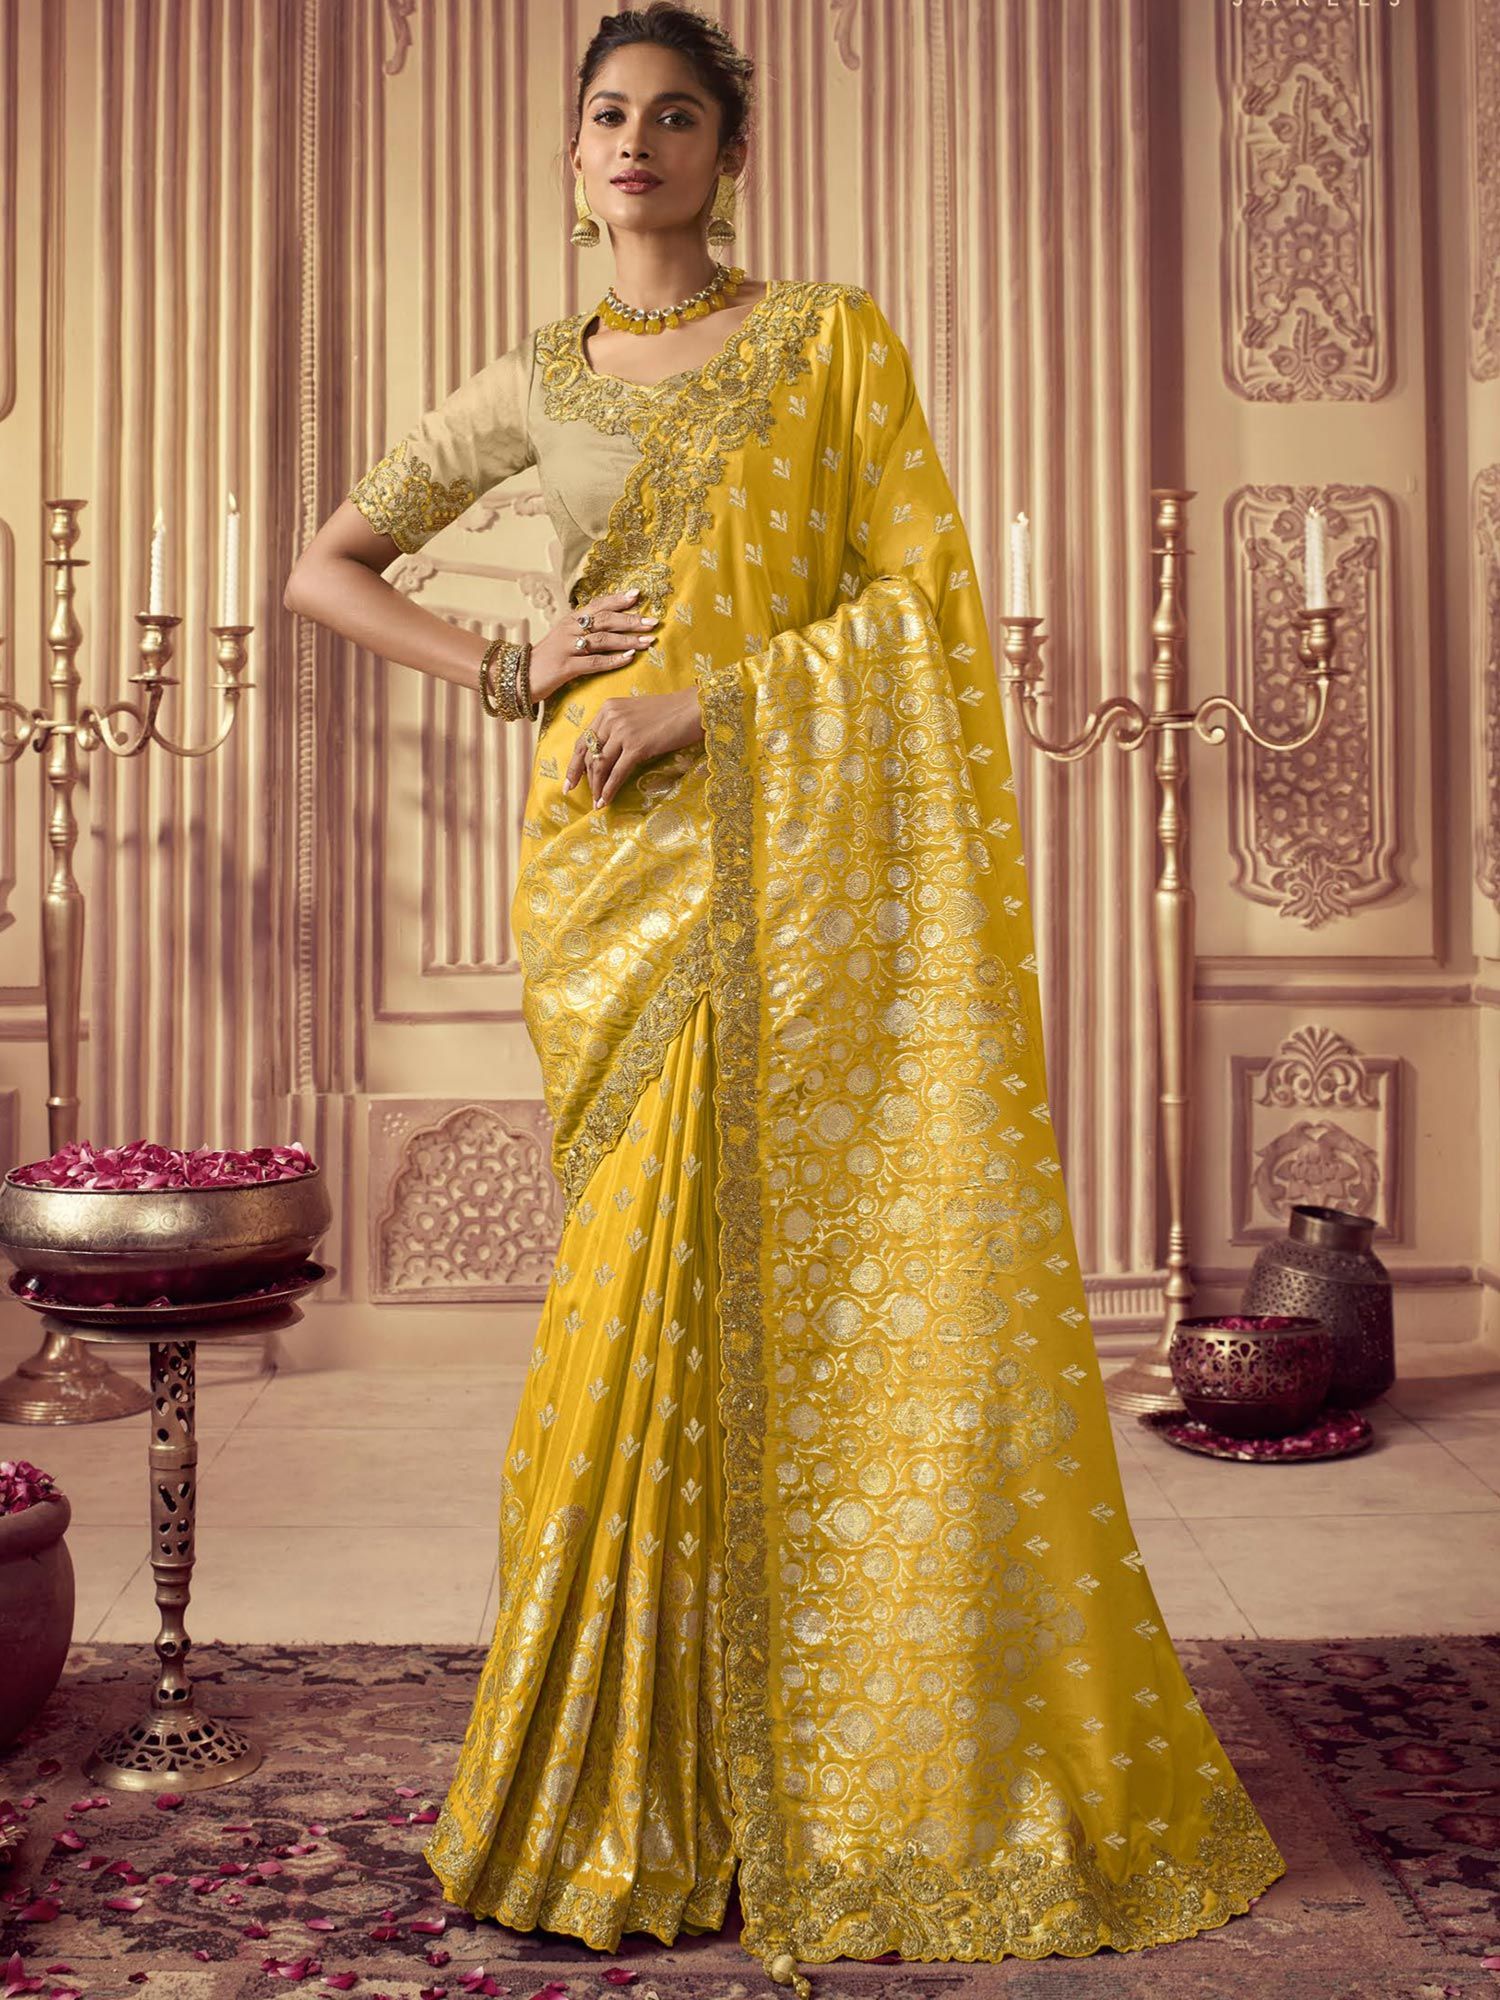 Yellow bridal saree design - yellow saree for wedding - YouTube-atpcosmetics.com.vn